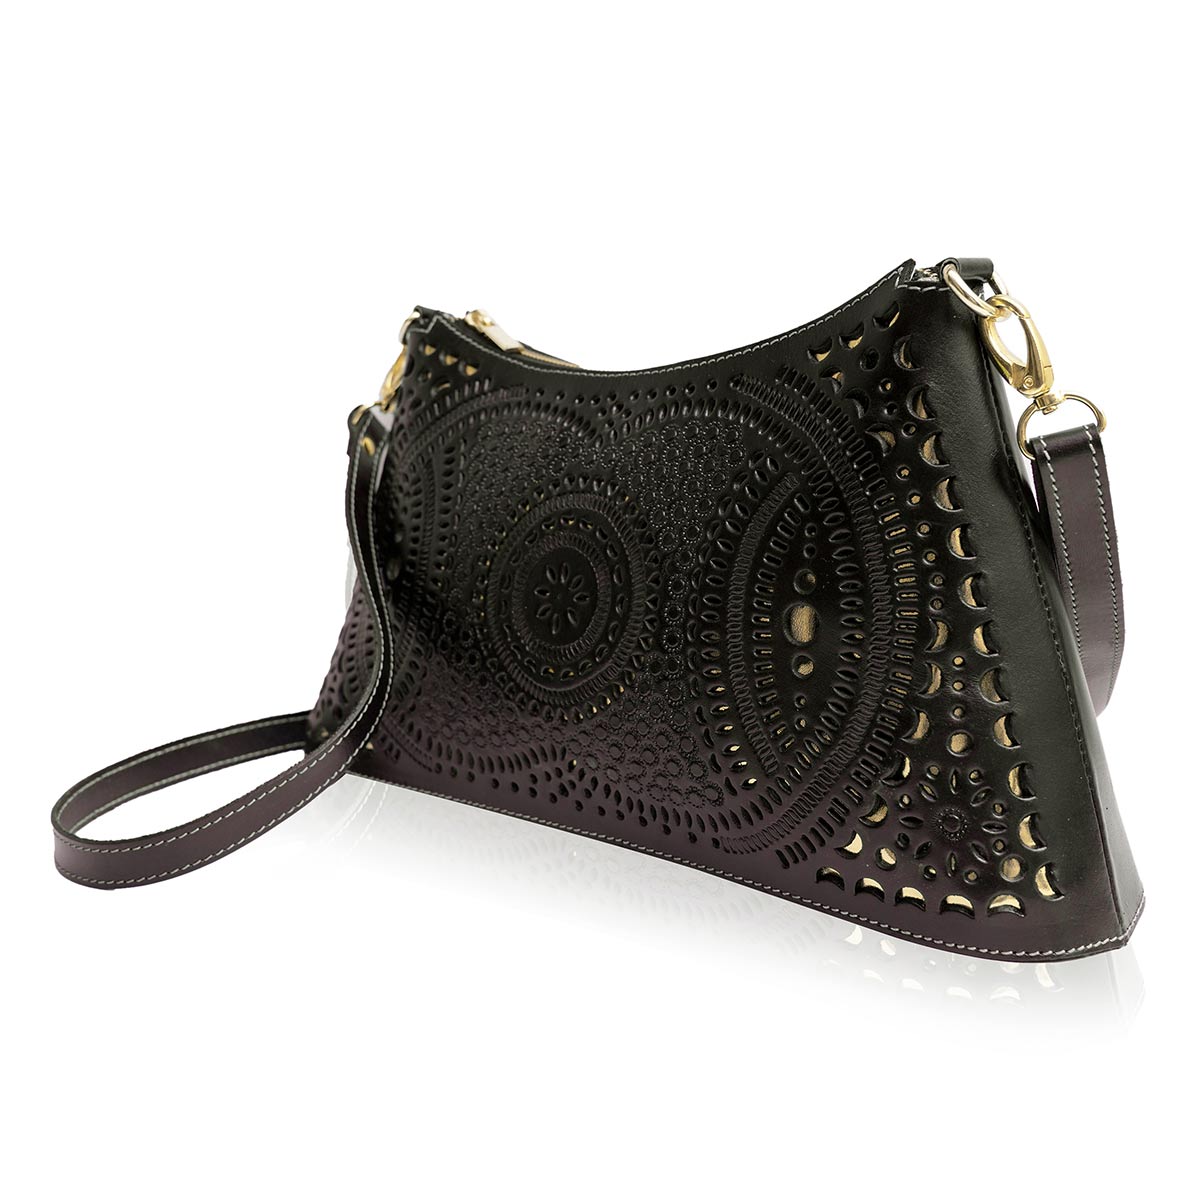 KatStella- Leather Shoulder Bag